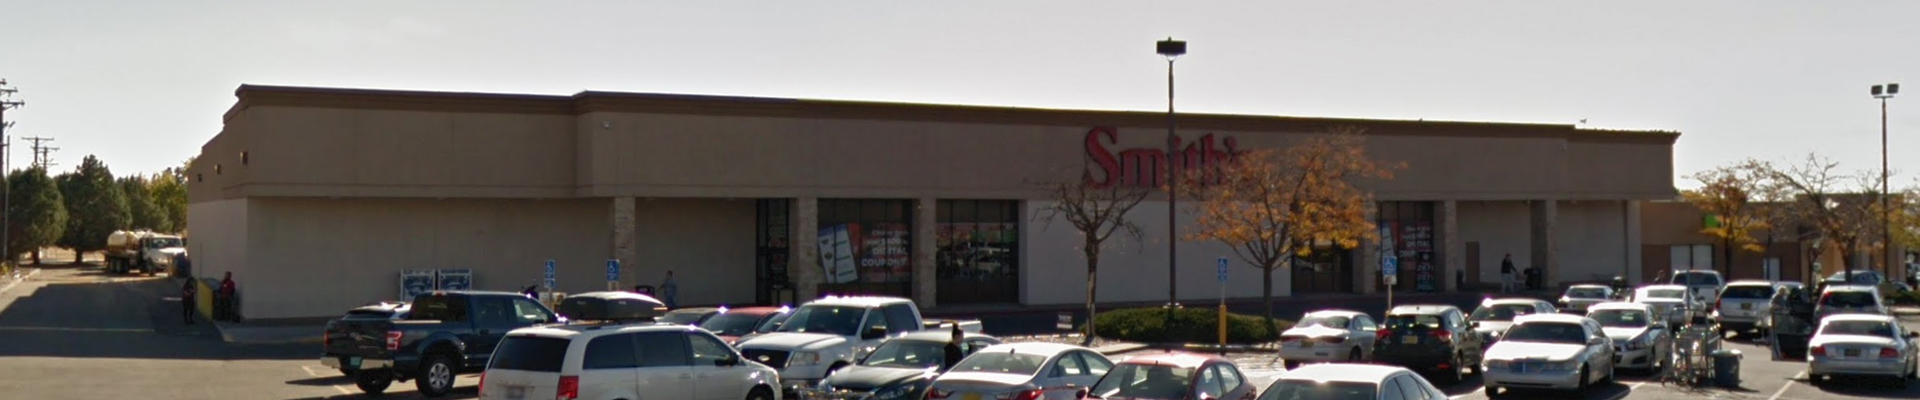 Smith’s Foods – Louisiana Blvd. – Albuquerque, New Mexico